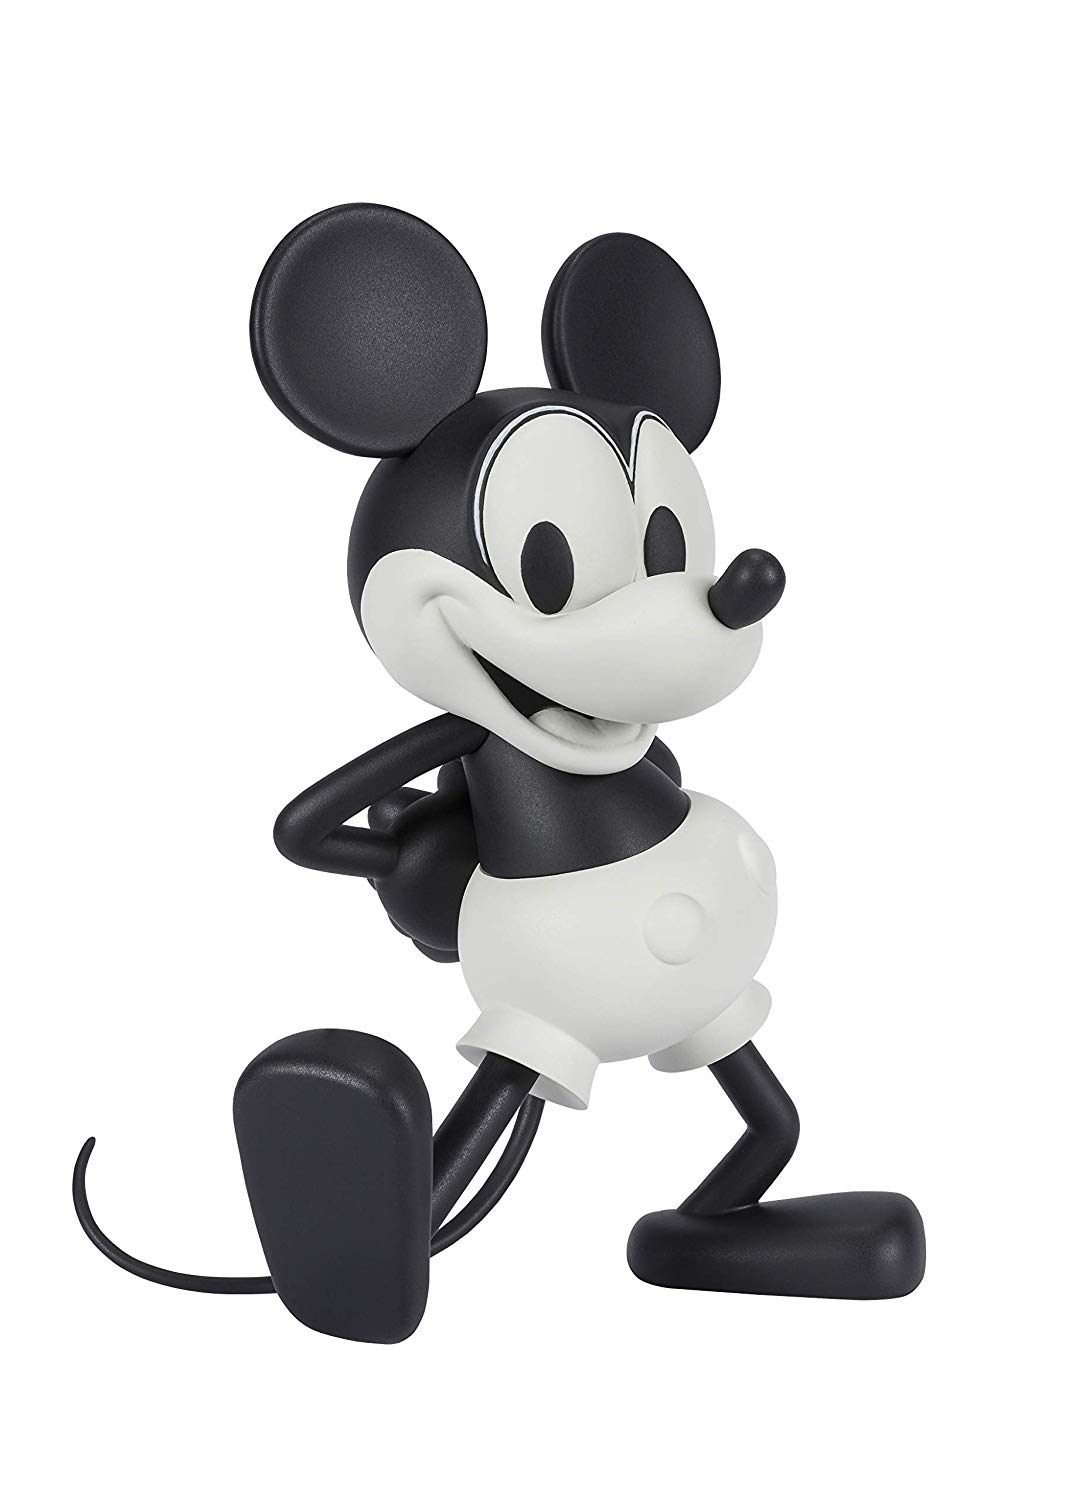 ミッキーマウス デビュー90周年 年代別ミッキーが「フィギュアーツZERO」から全6体が続々発売【バンダイ】 | トイプレ